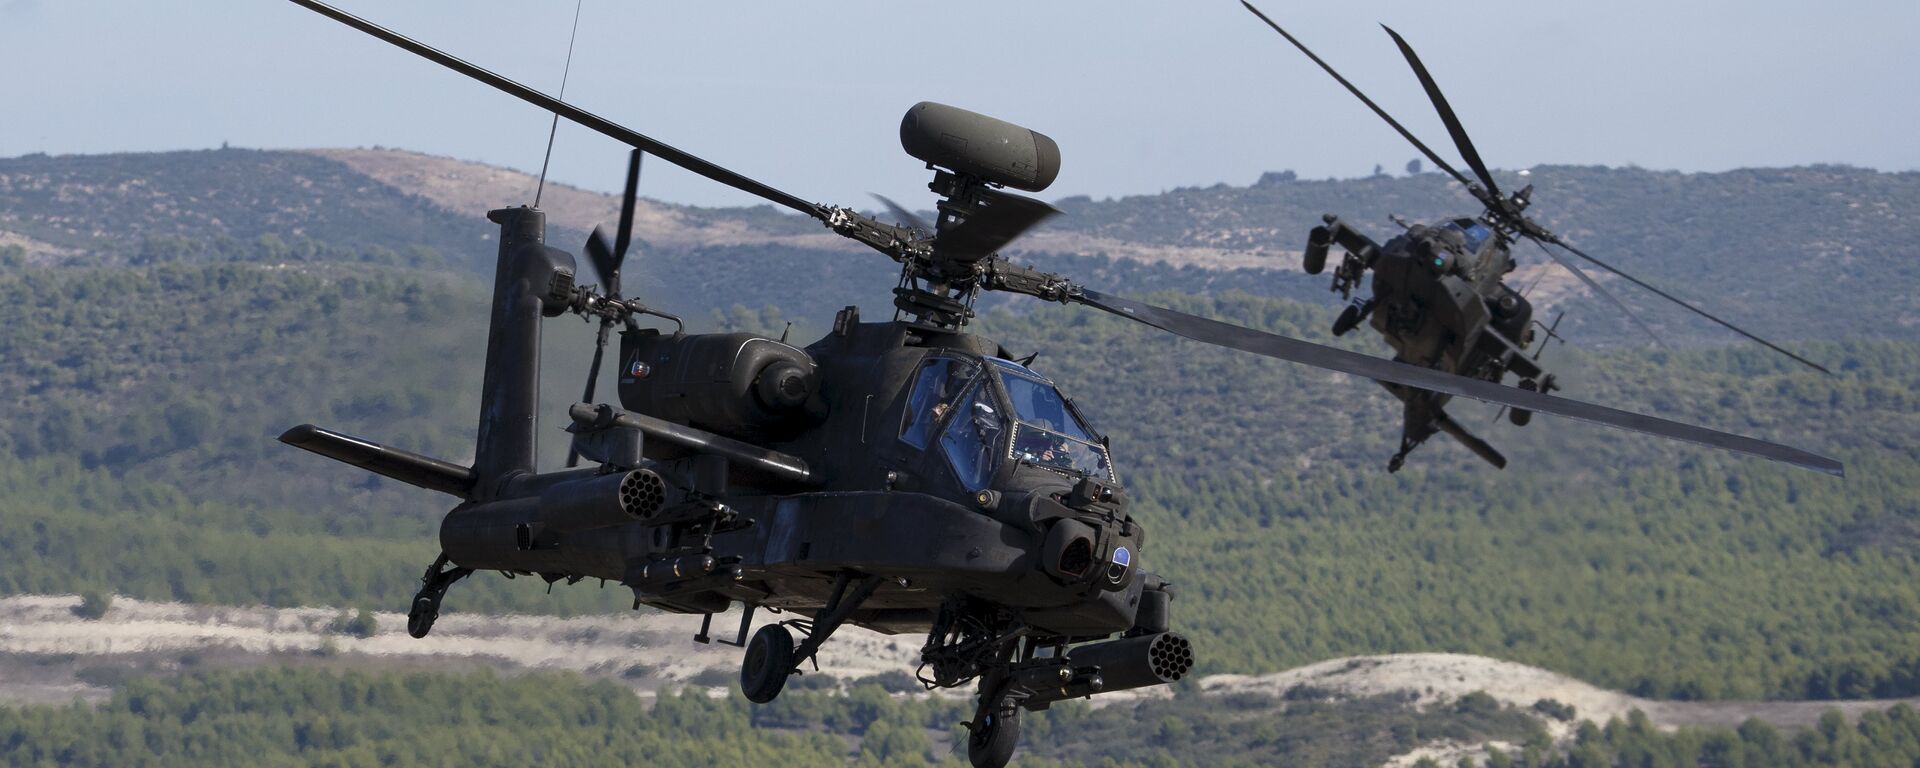 ایالات متحده امریکا 20 هلیگوپتر های آپاچی را به اروپا انتقال میدهد - اسپوتنیک افغانستان  , 1920, 24.01.2017